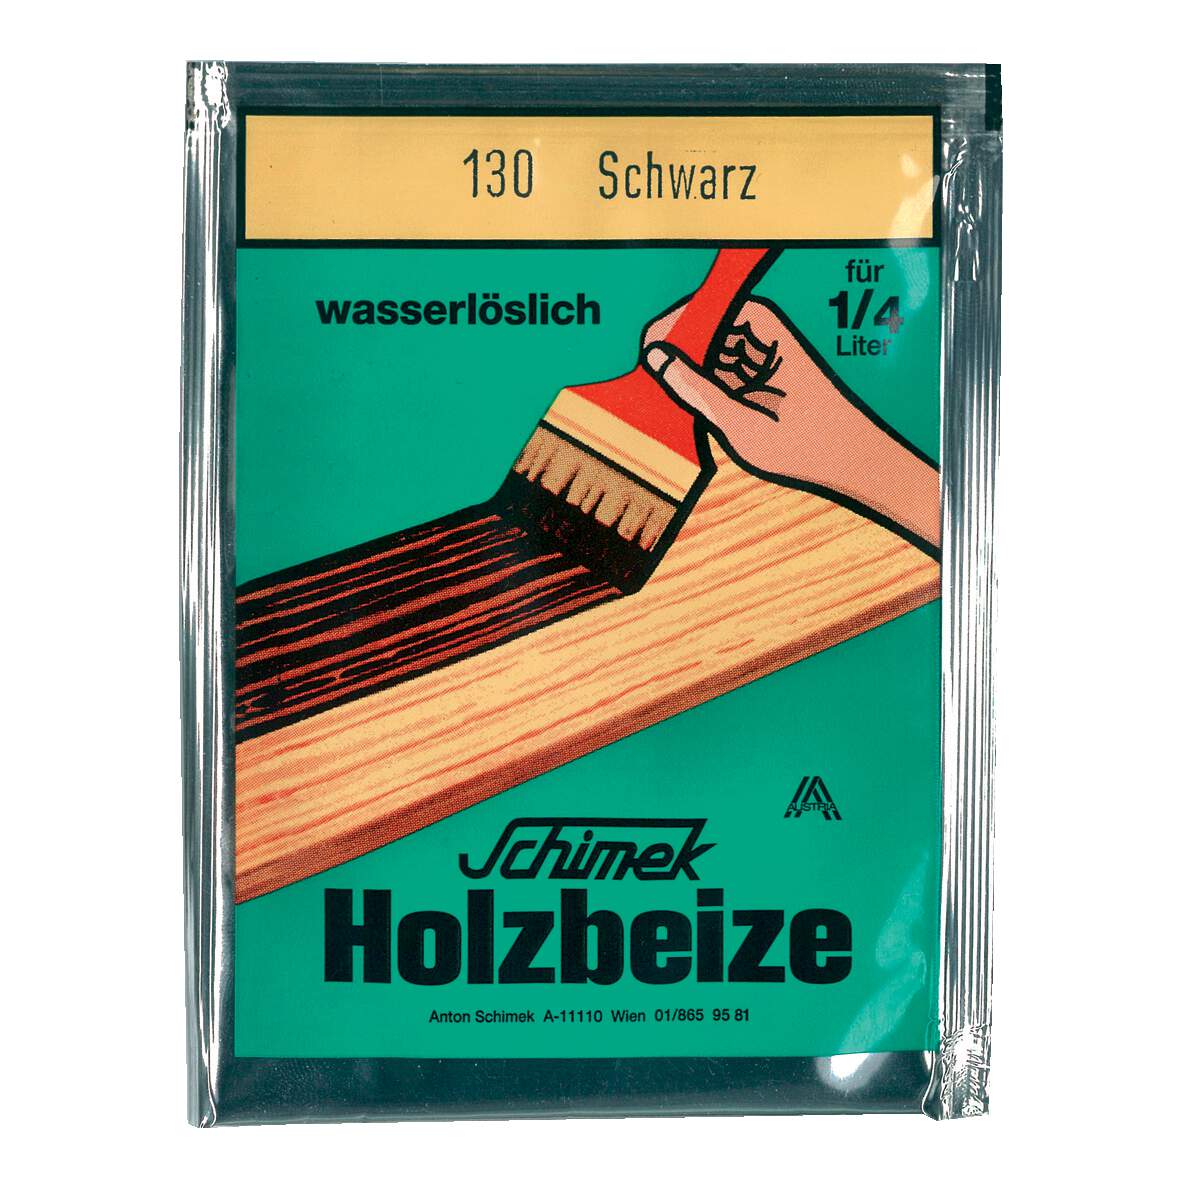 1216625 - Holzbeize wasserlöslich